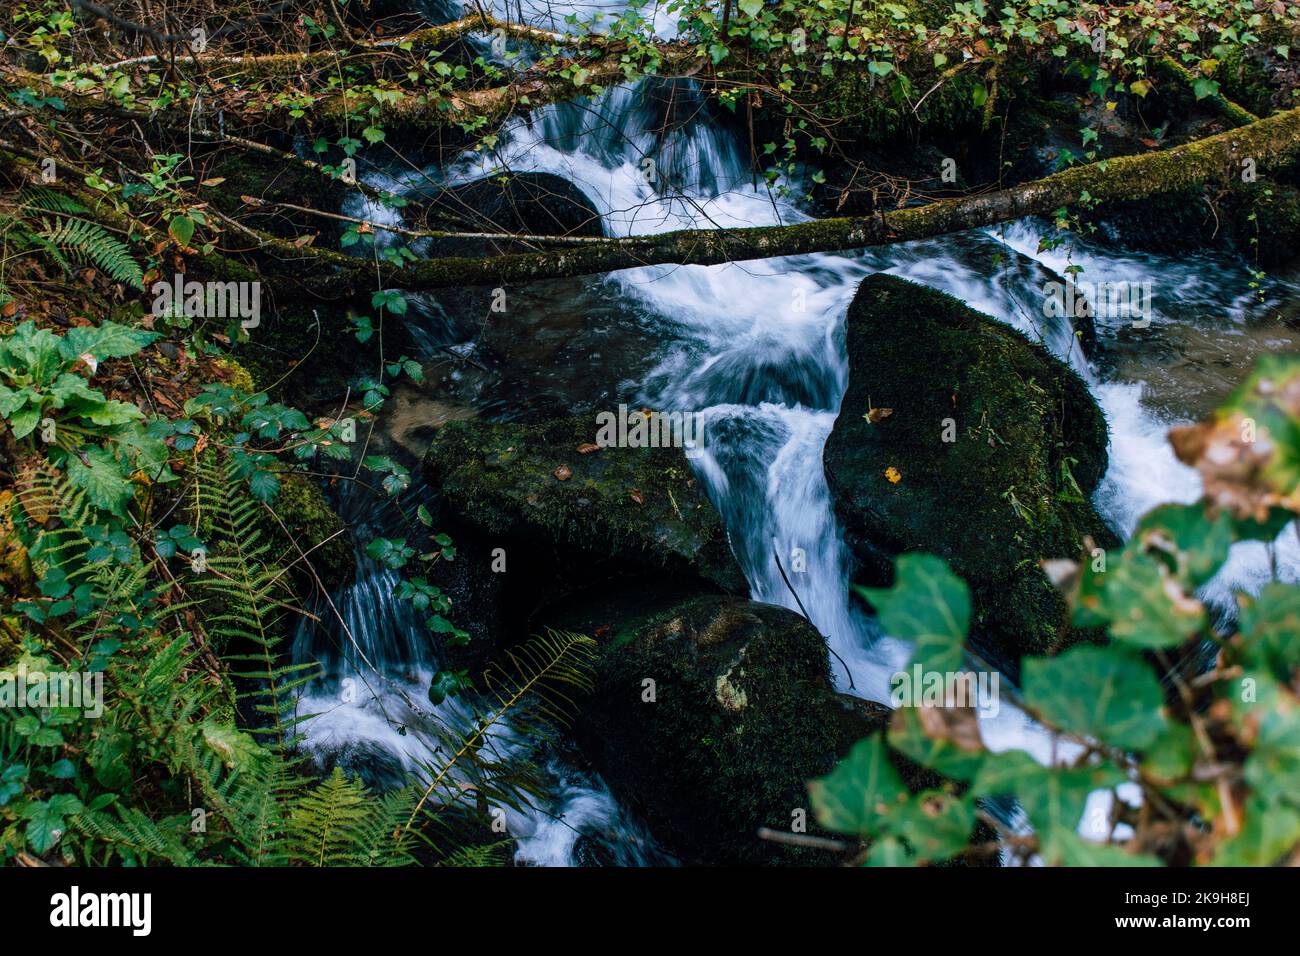 Cascata fluente in una foresta con rocce mossy Foto Stock